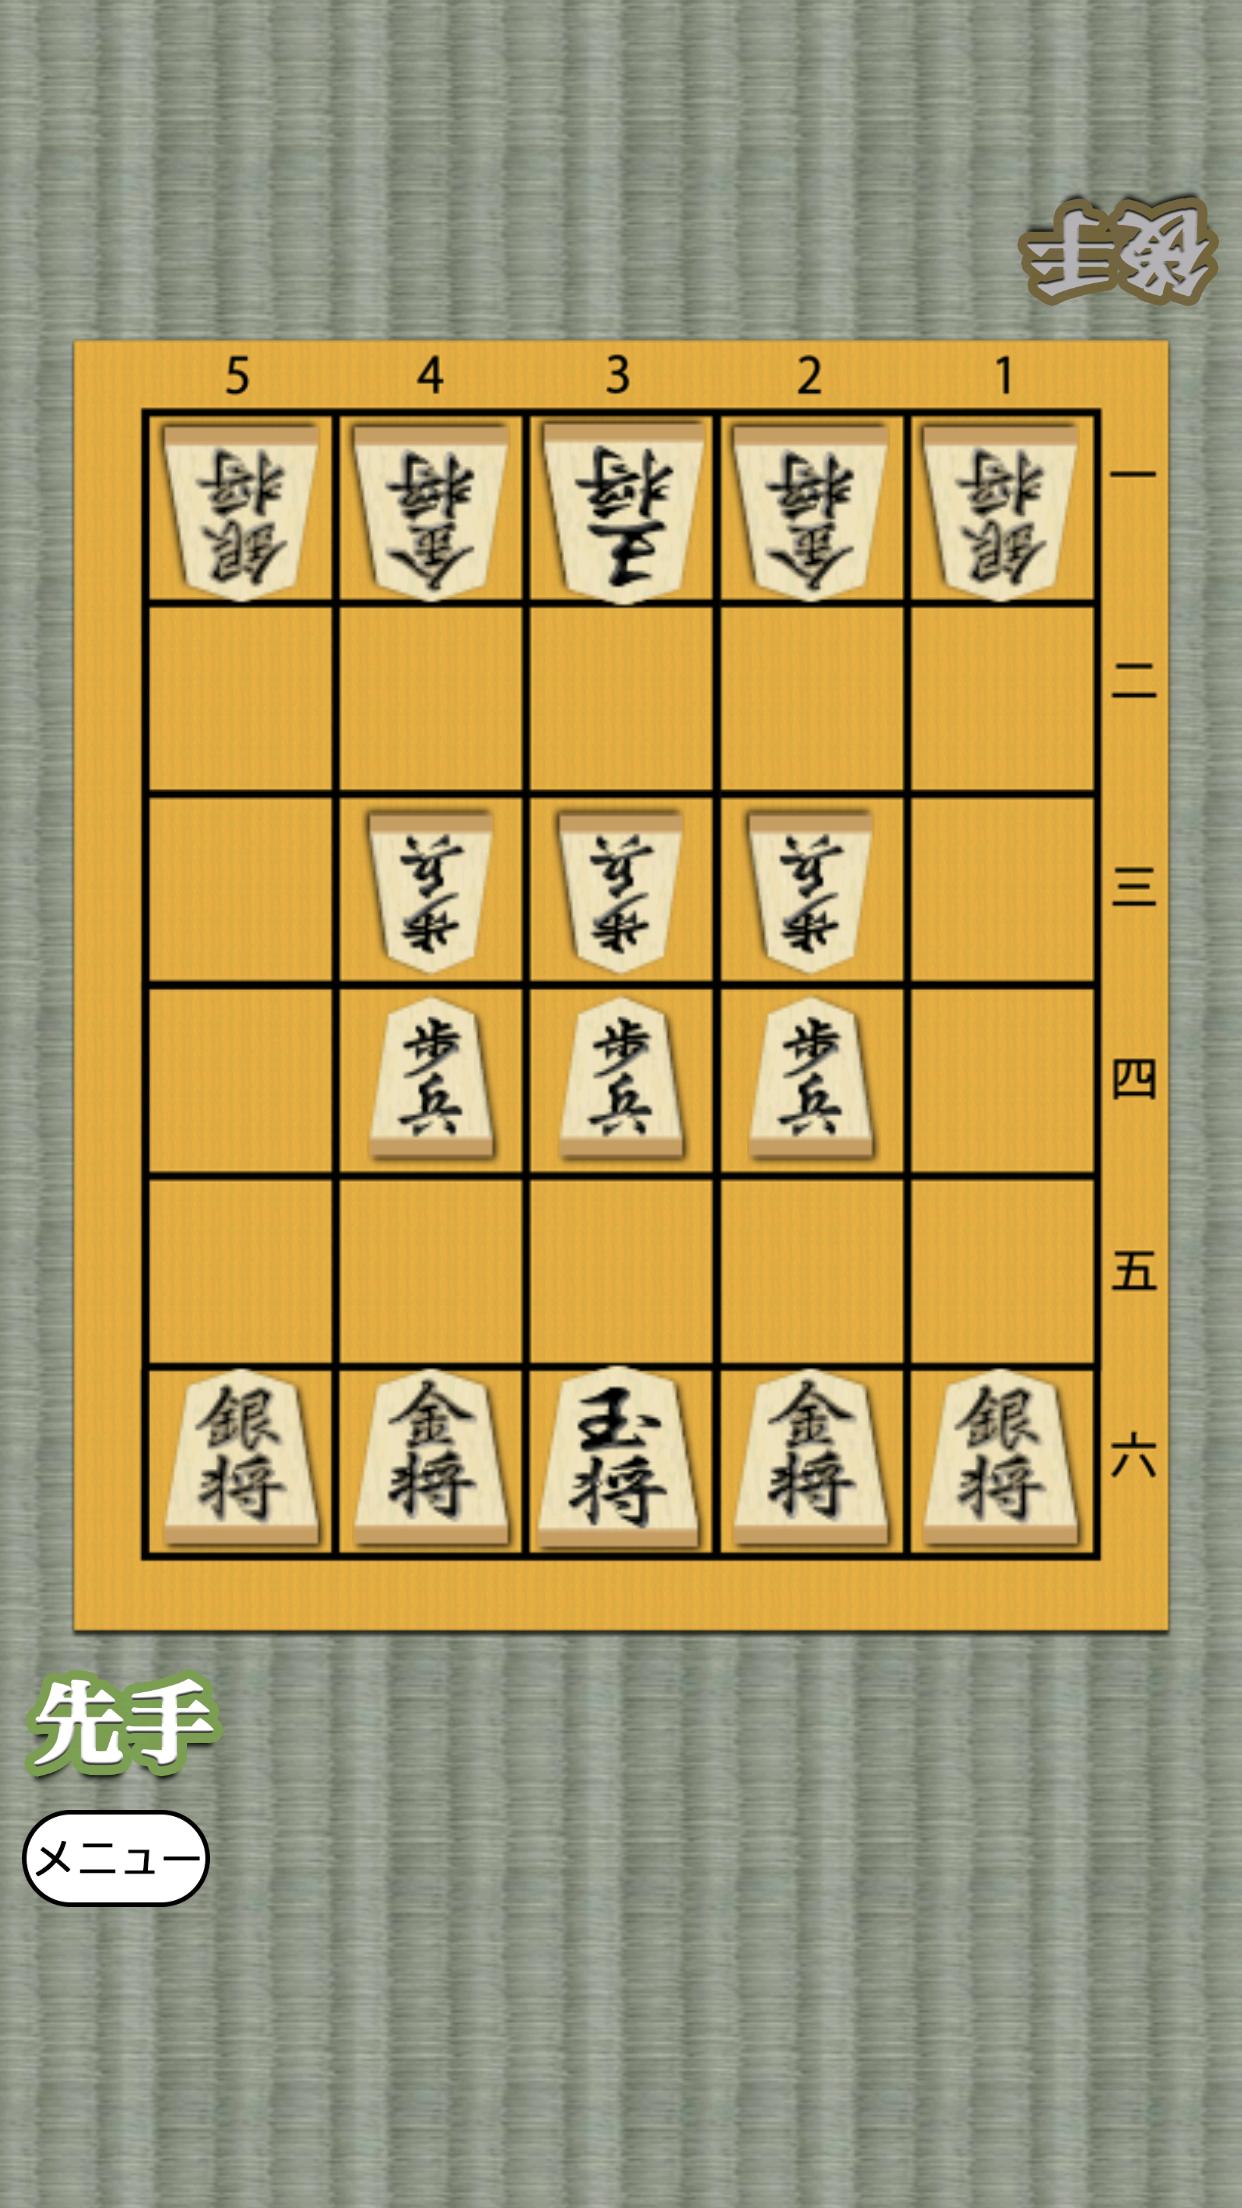 Shogi for beginners 1.0.4 Screenshot 13